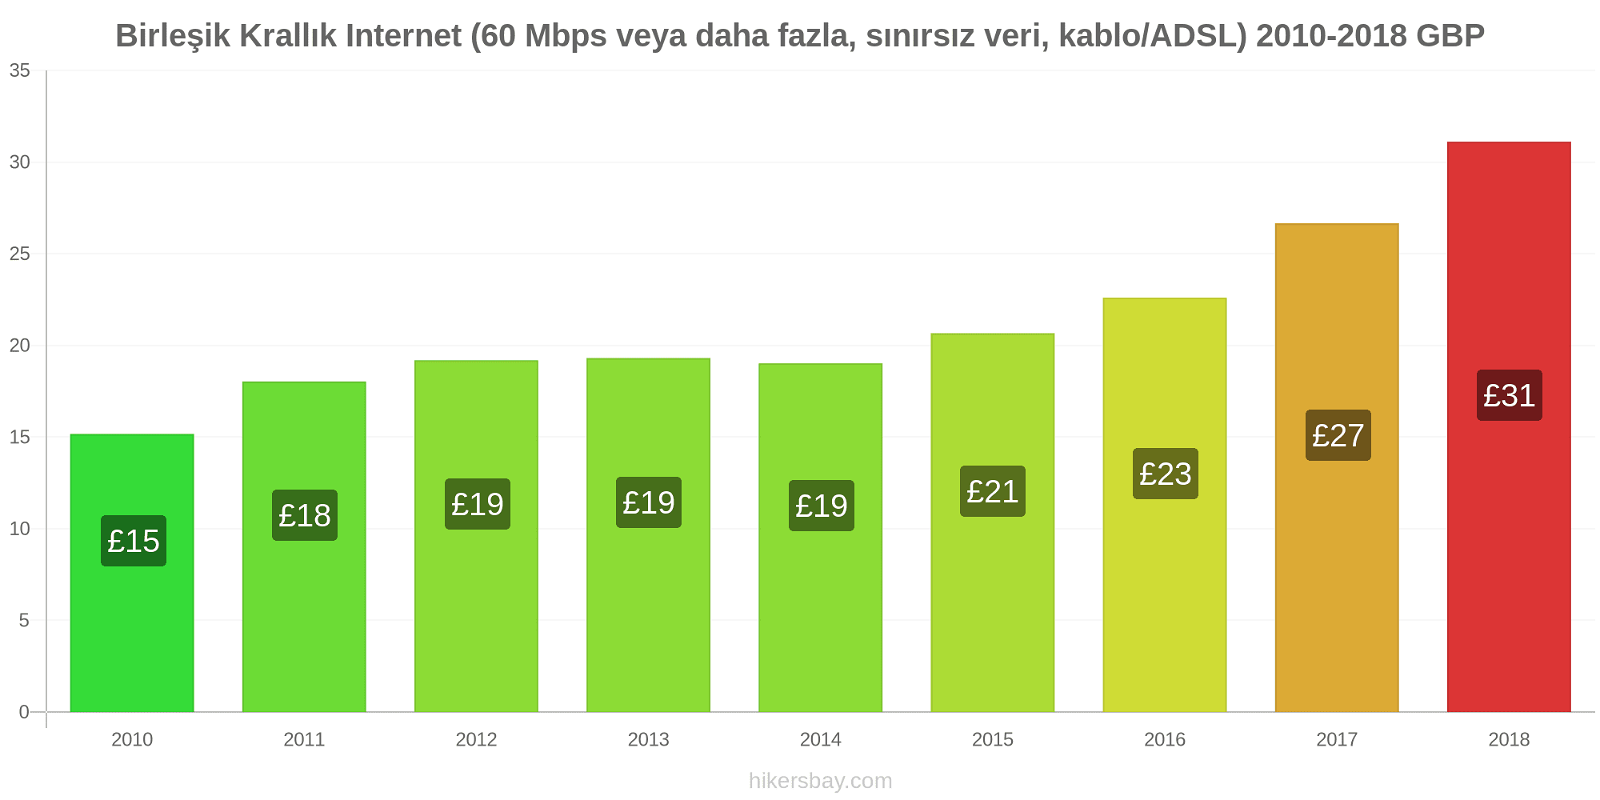 Birleşik Krallık fiyat değişiklikleri İnternet (60 Mbps veya daha fazla, sınırsız veri, kablo/ADSL) hikersbay.com